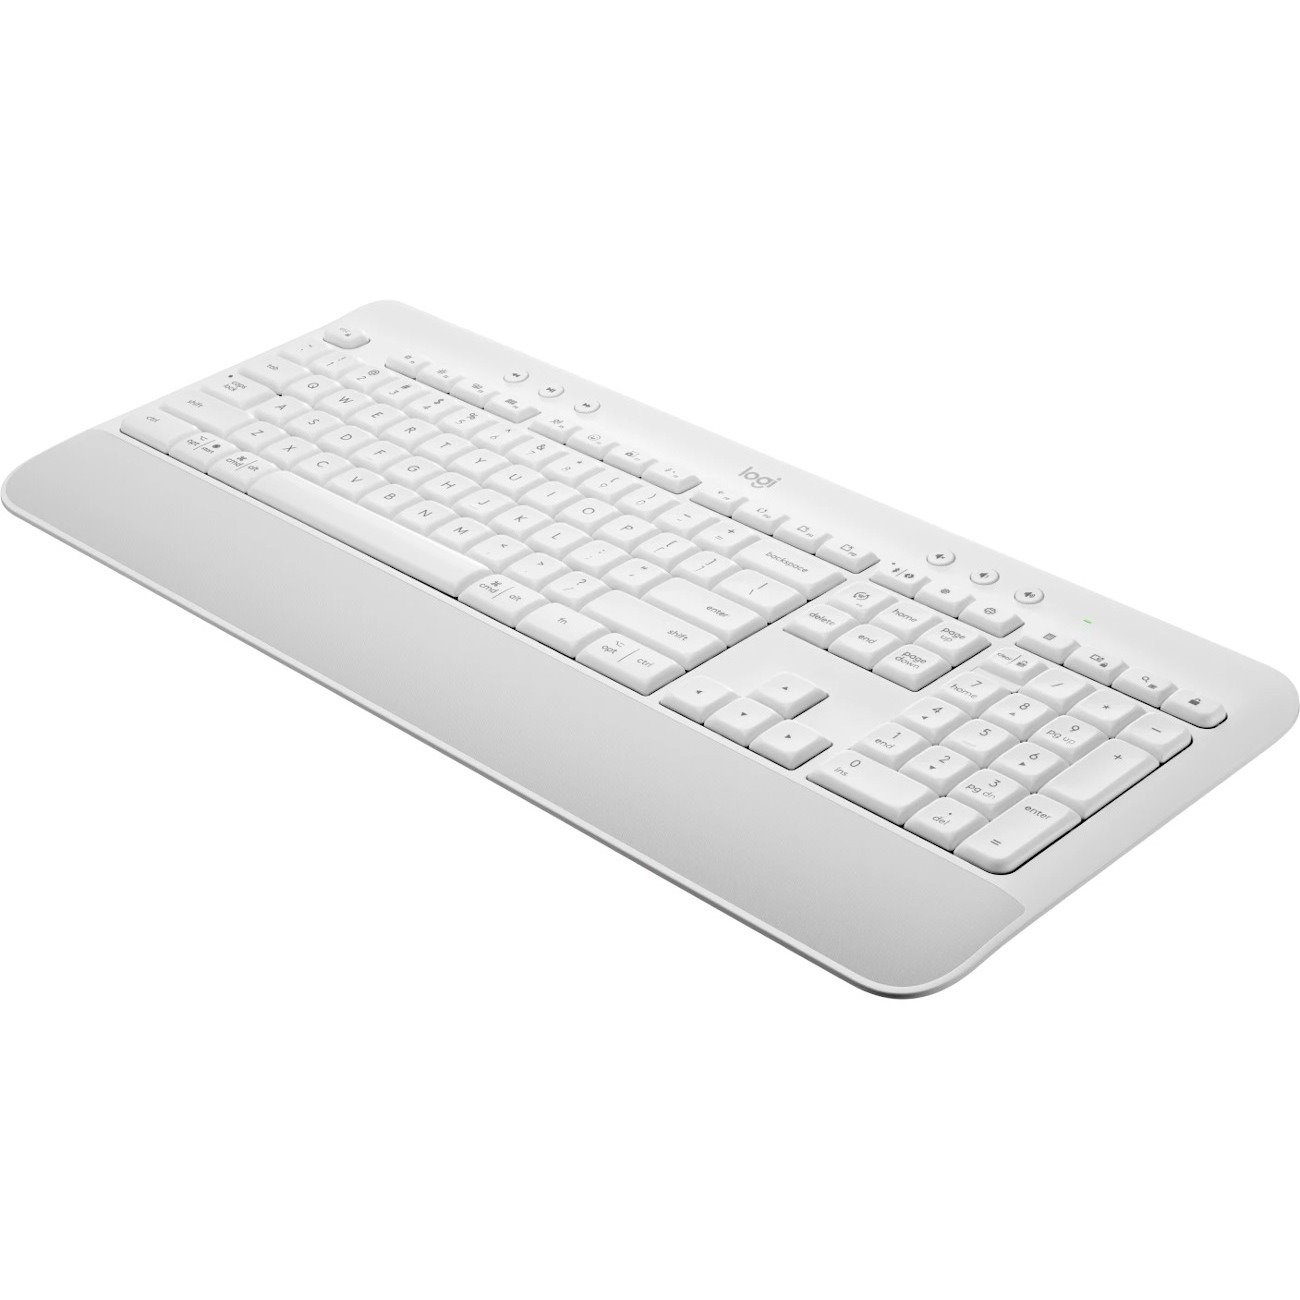 Logitech Signature K650 Keyboard - Wireless Connectivity - USB Interface - English - Off White, White